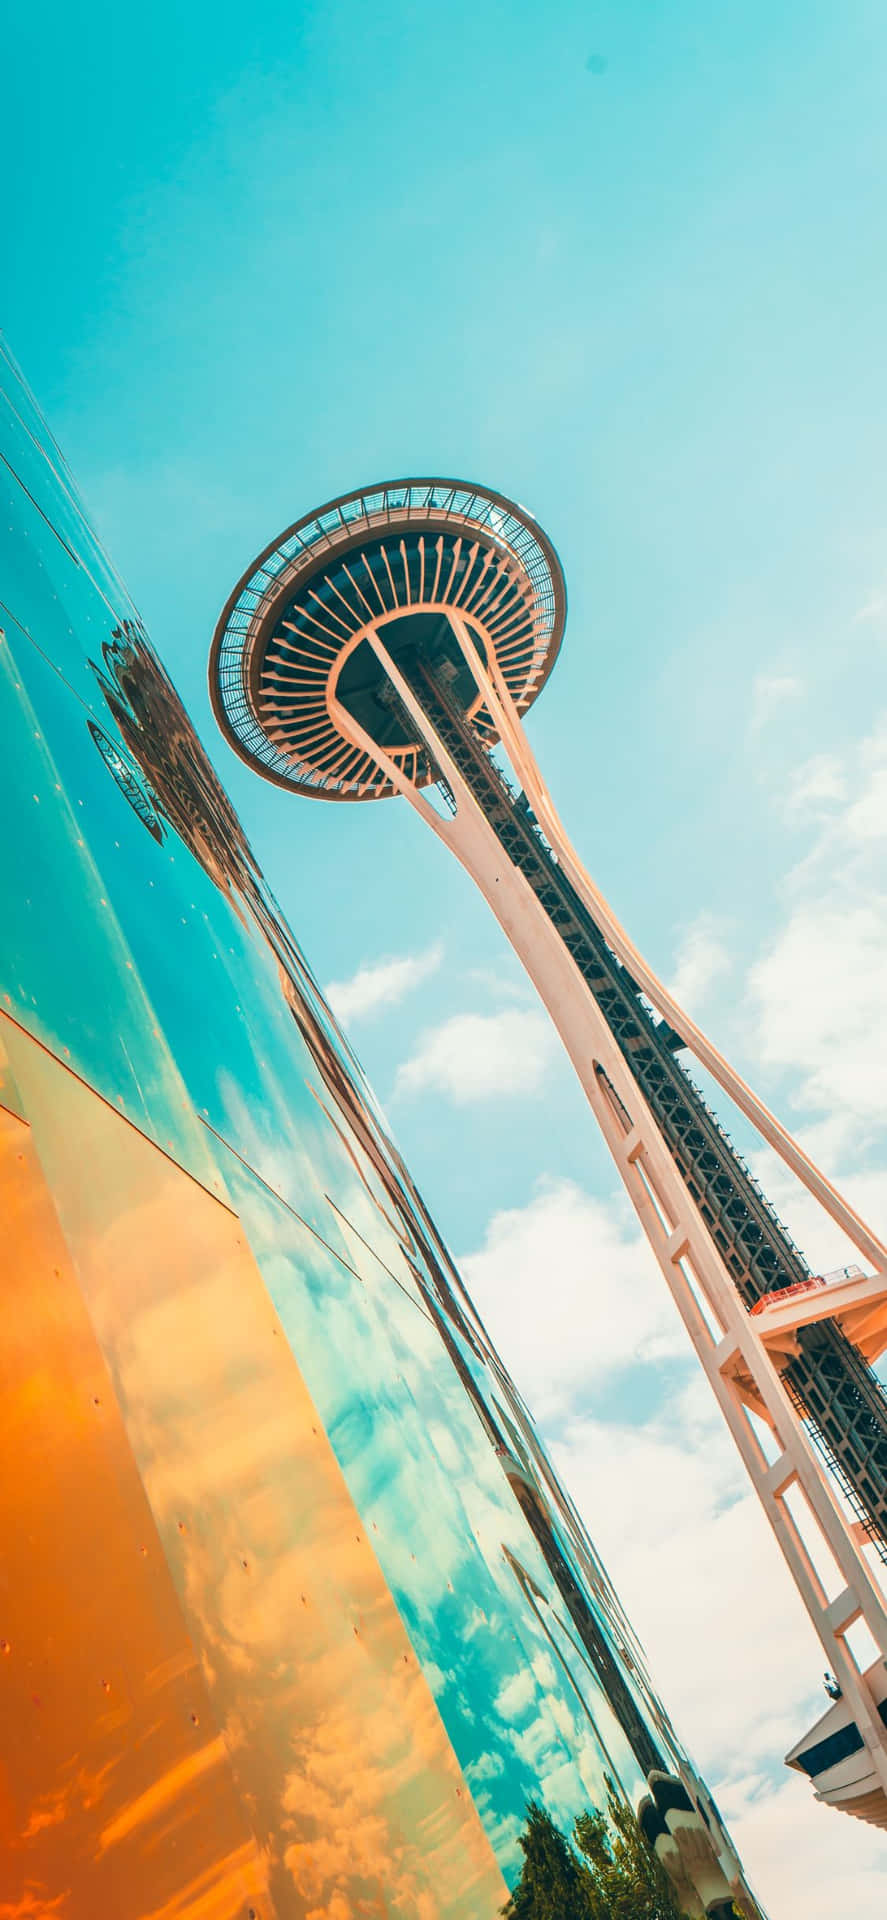 Genießedie Atemberaubende Aussicht Auf Dem Iphone X In Seattle.